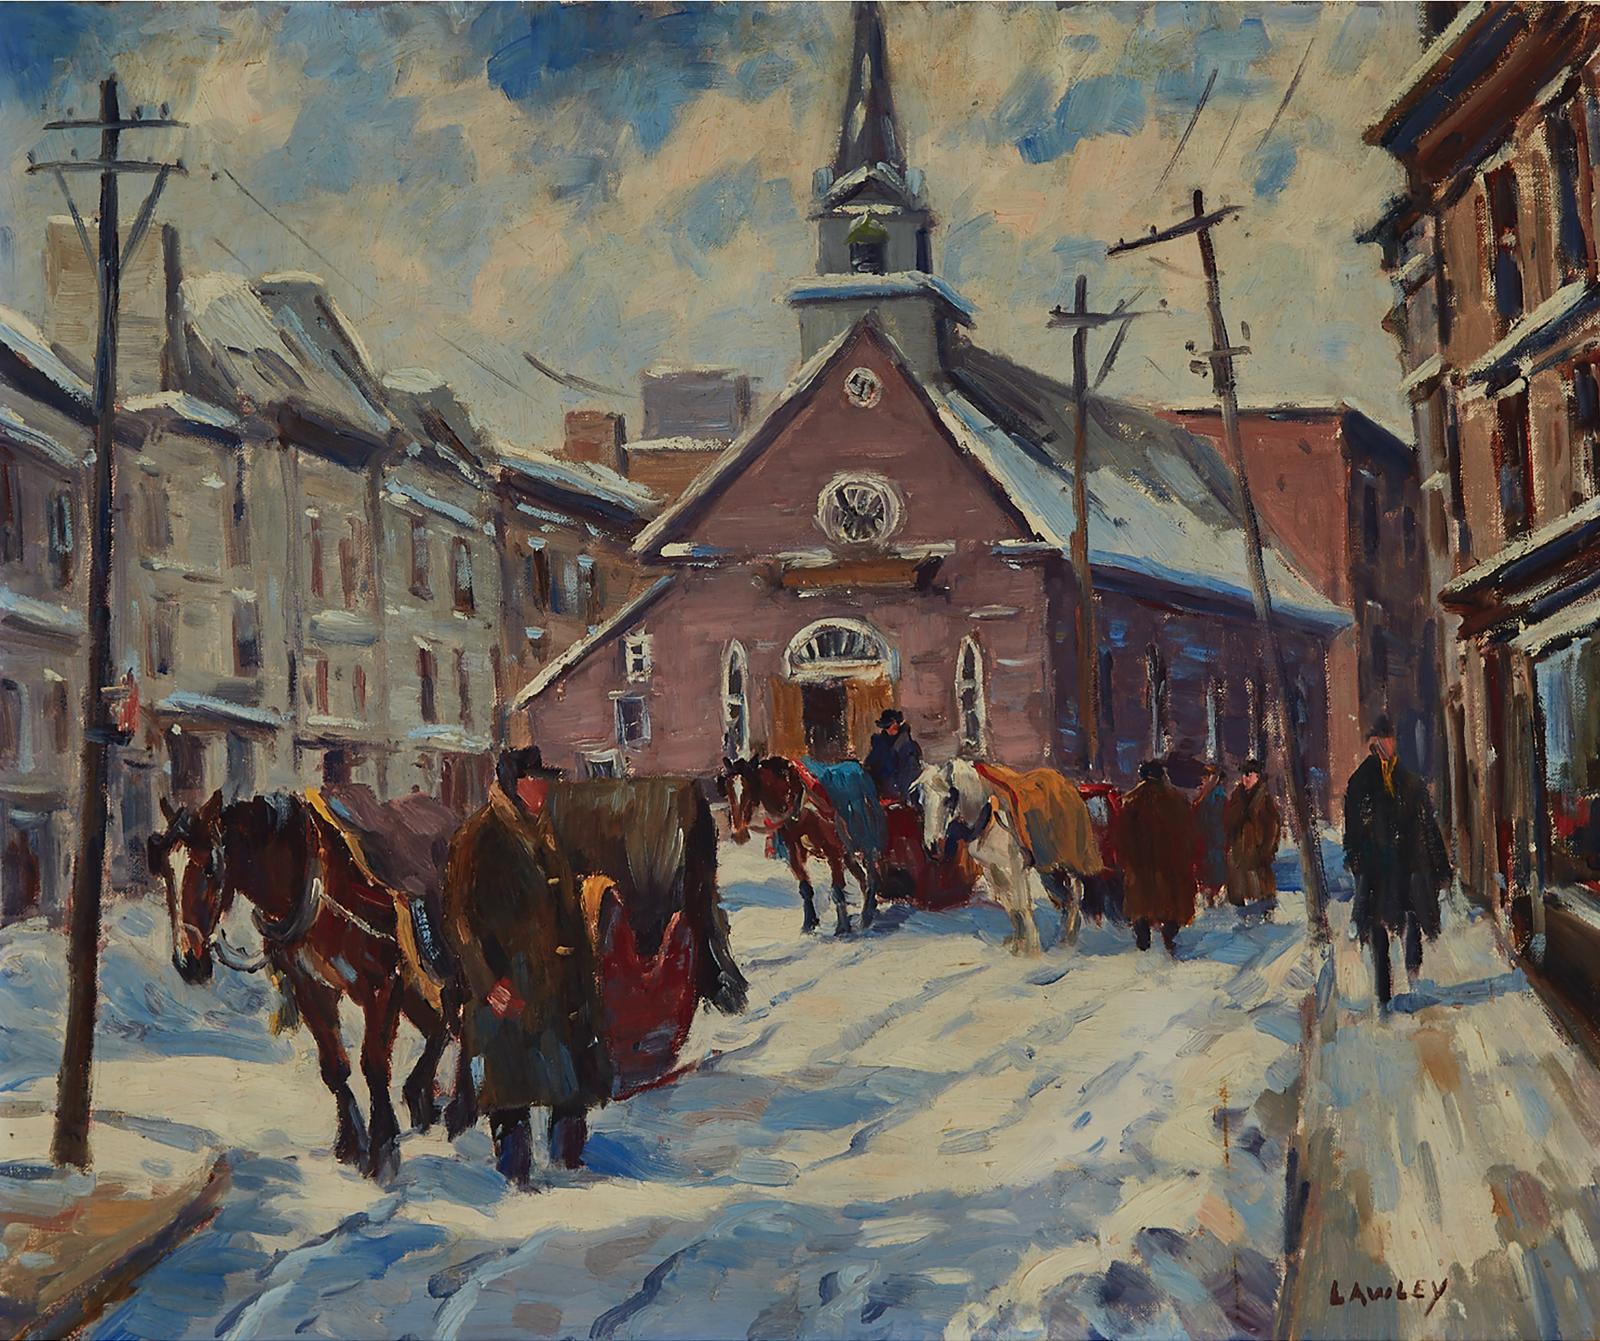 John Douglas Lawley (1906-1971) - Notre Dame Des Victoires, Québec